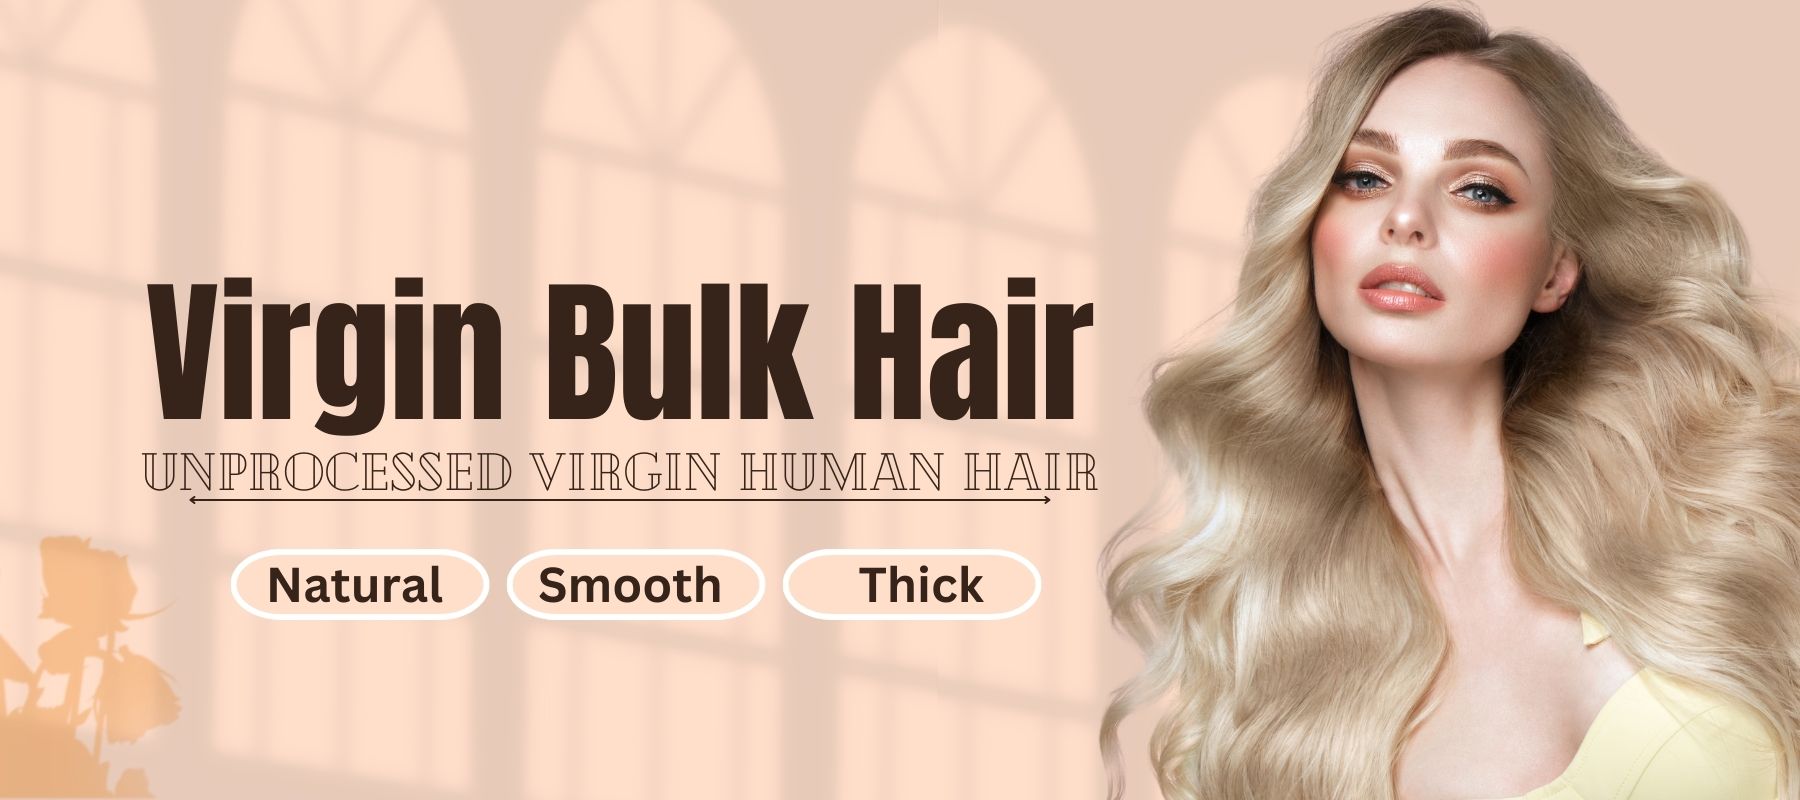 VIRGIN HAIR BULK